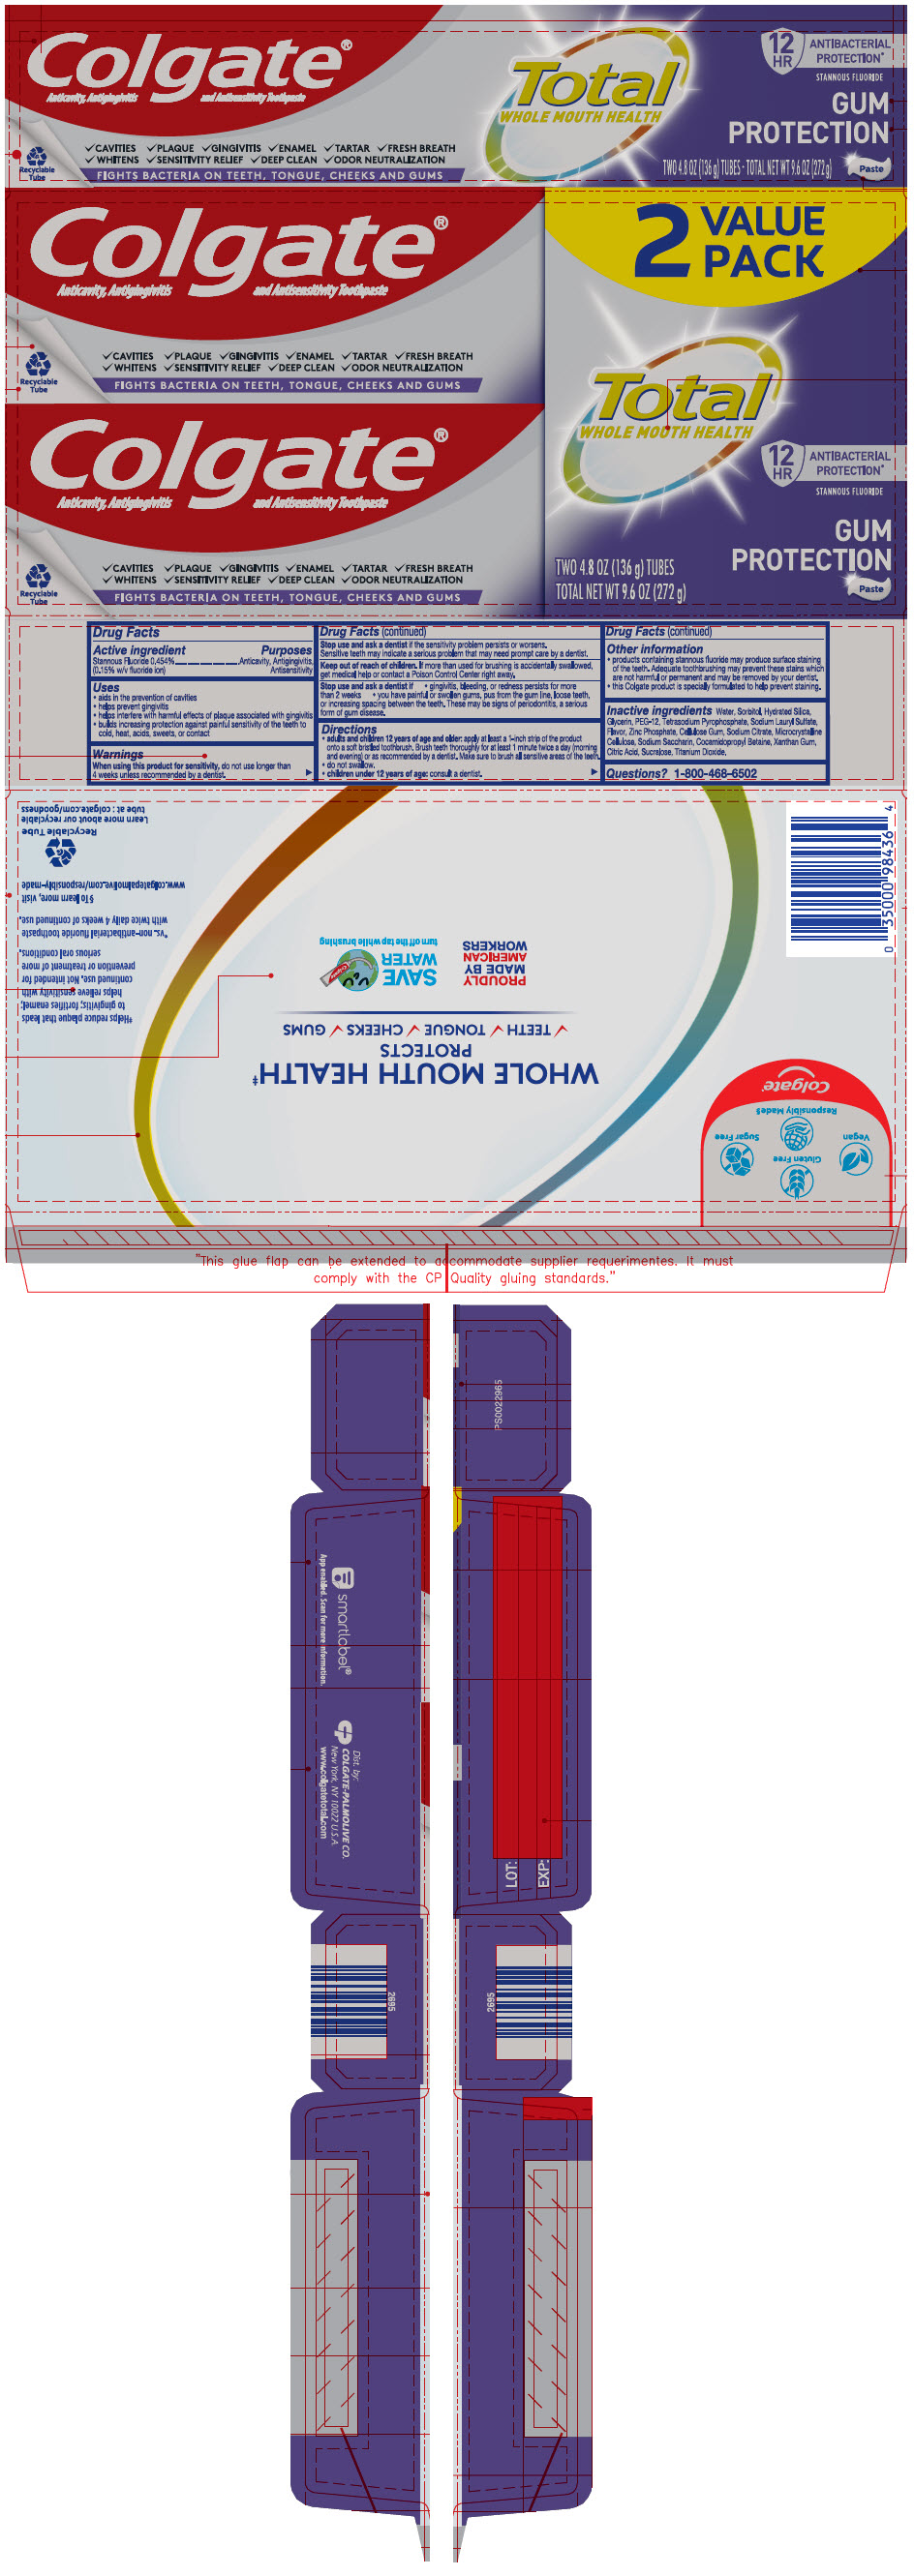 PRINCIPAL DISPLAY PANEL - Two 136 g Tube Carton